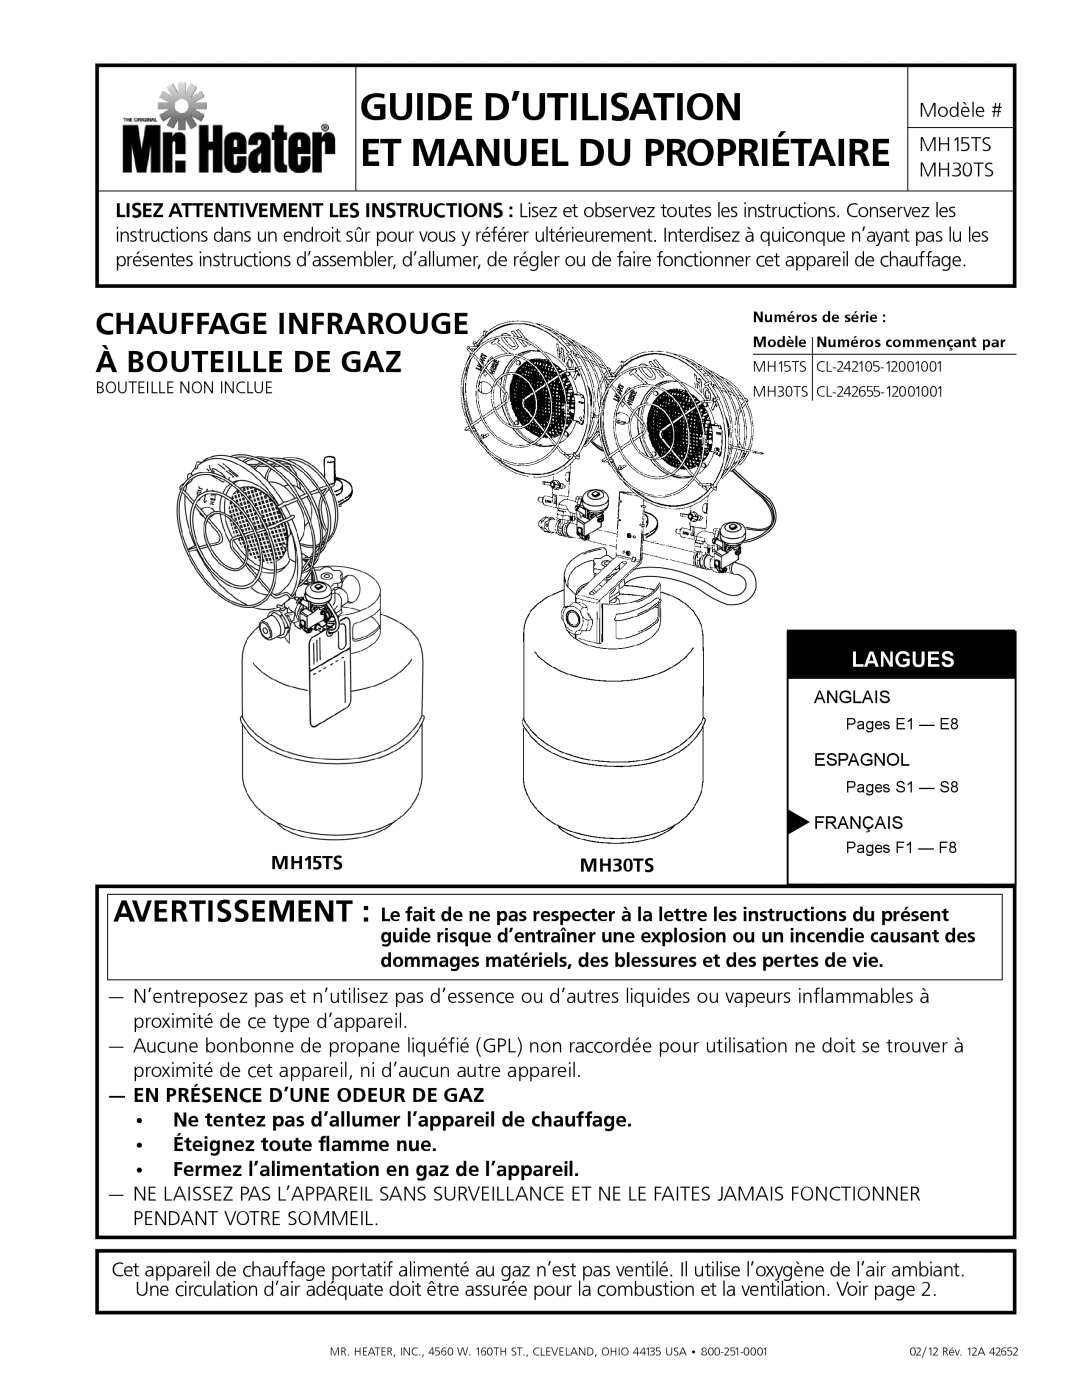 Mr. Heater MH15tS Guide d’utilisation et manuel du propriétaire, Chauffage infrarouge, à bouteille de gaz, Langues 